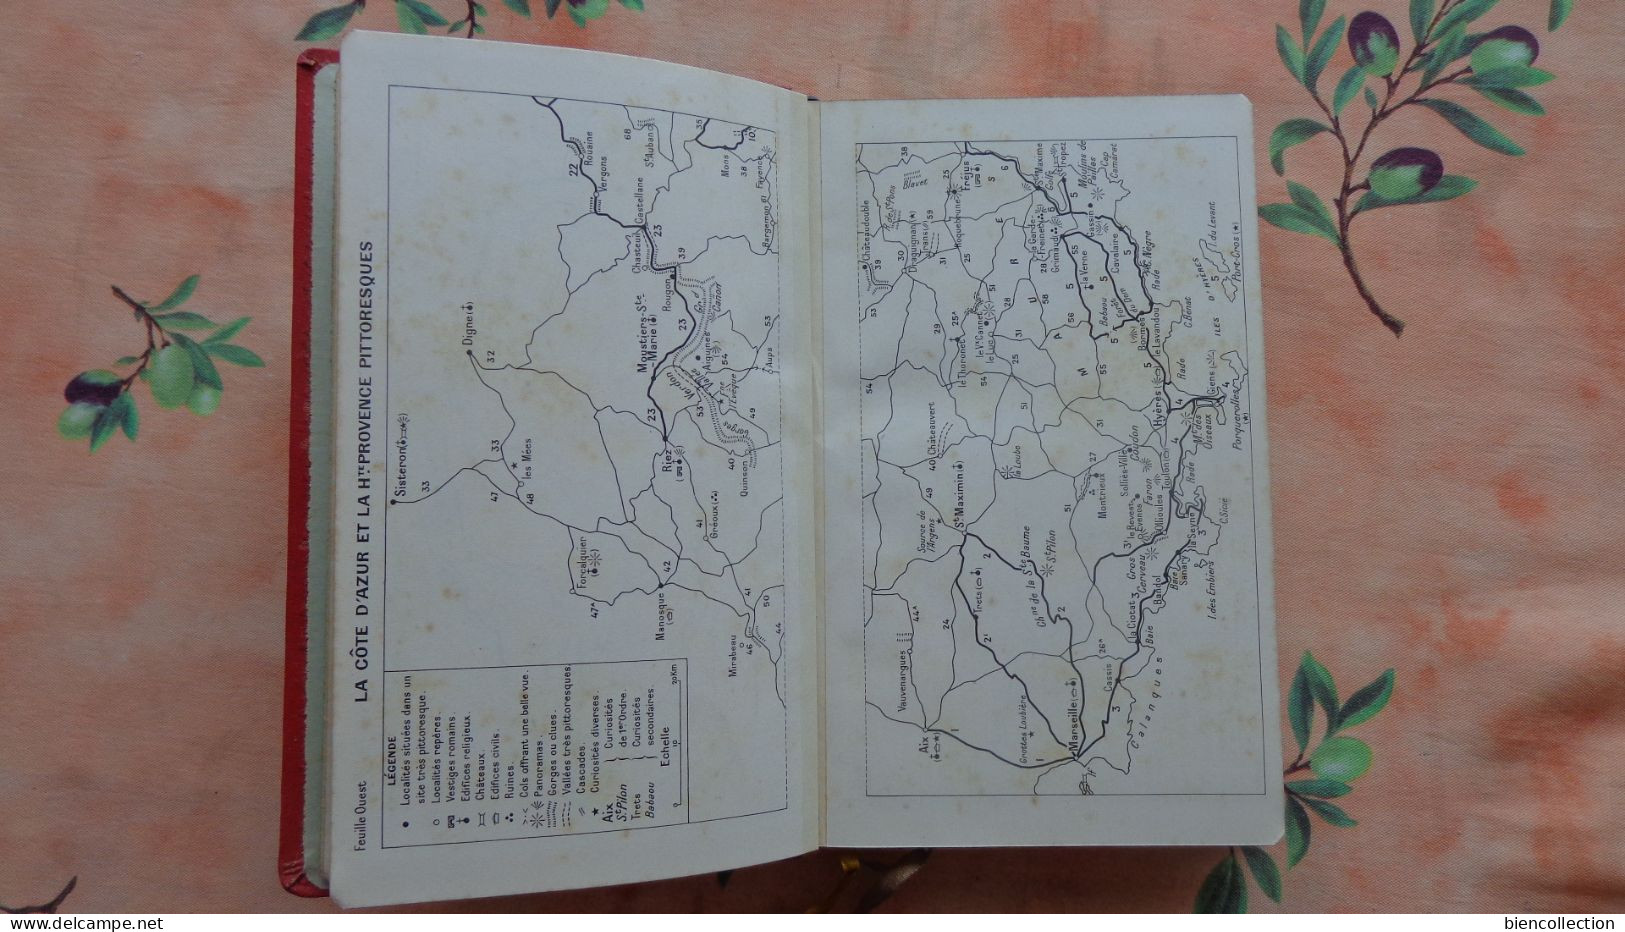 Guide Michelin régional Cote dAzur haute Provence 1933/34 en très bon état;